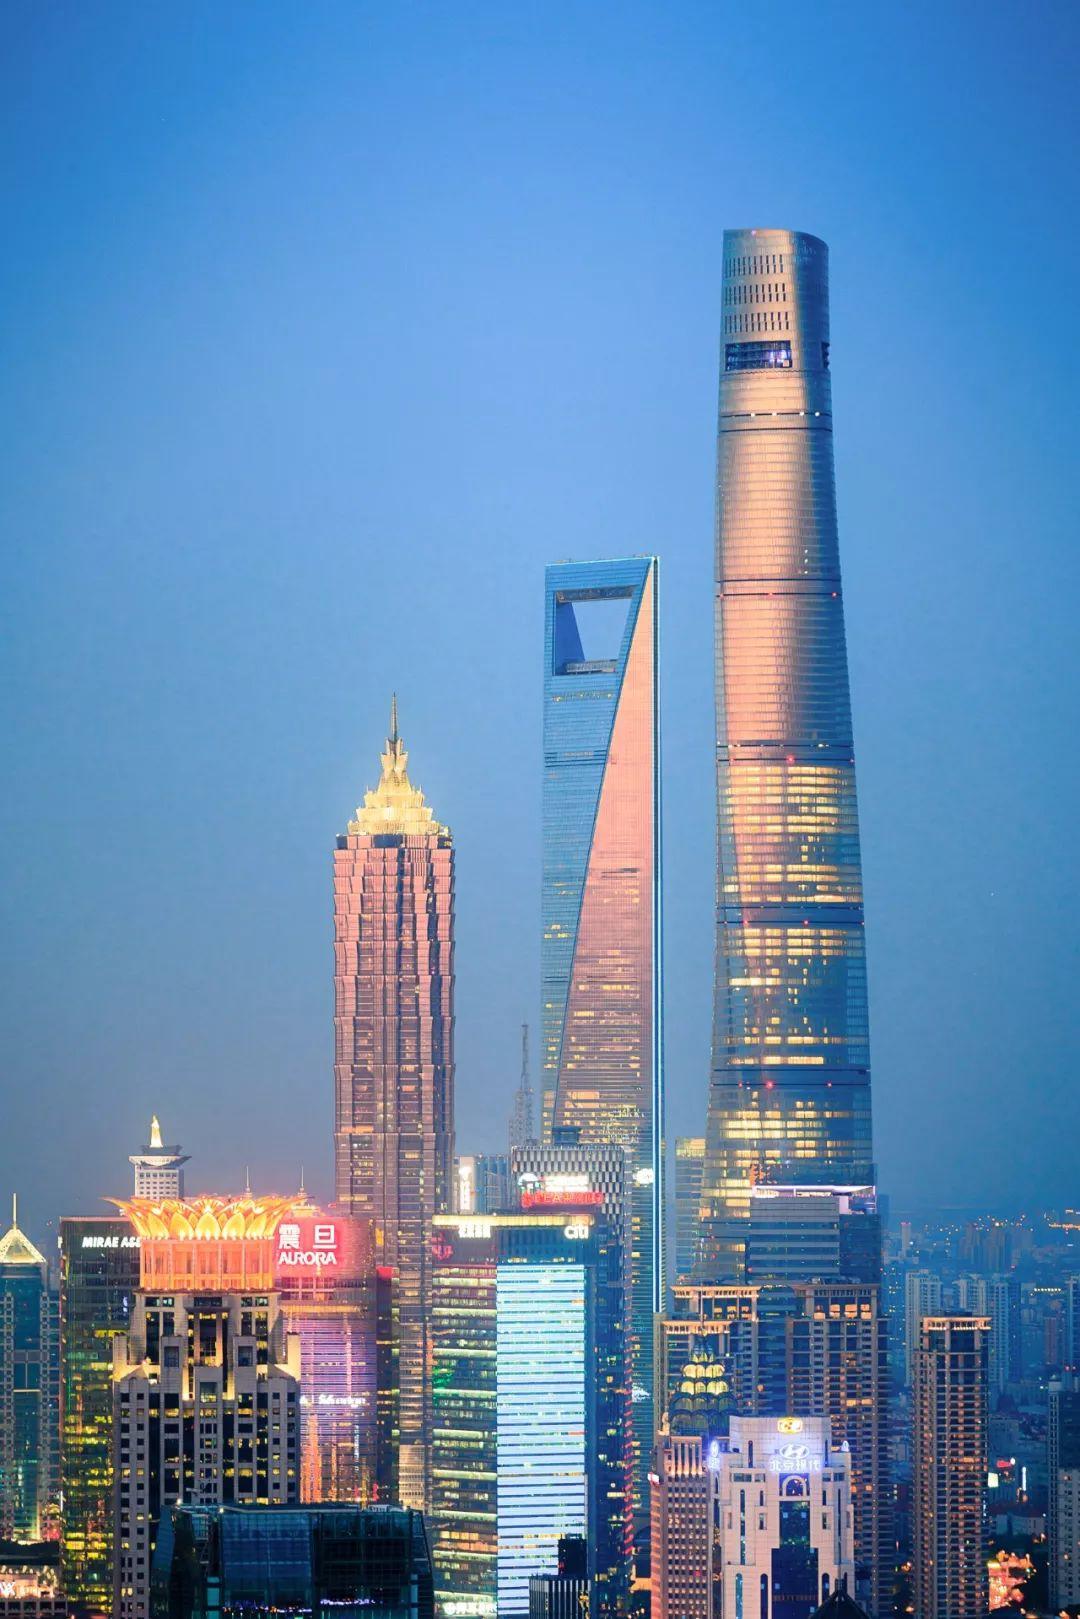 上海中心上海之巅观光厅 - Top20上海旅游景点详情 -上海市文旅推广网-上海市文化和旅游局 提供专业文化和旅游及会展信息资讯